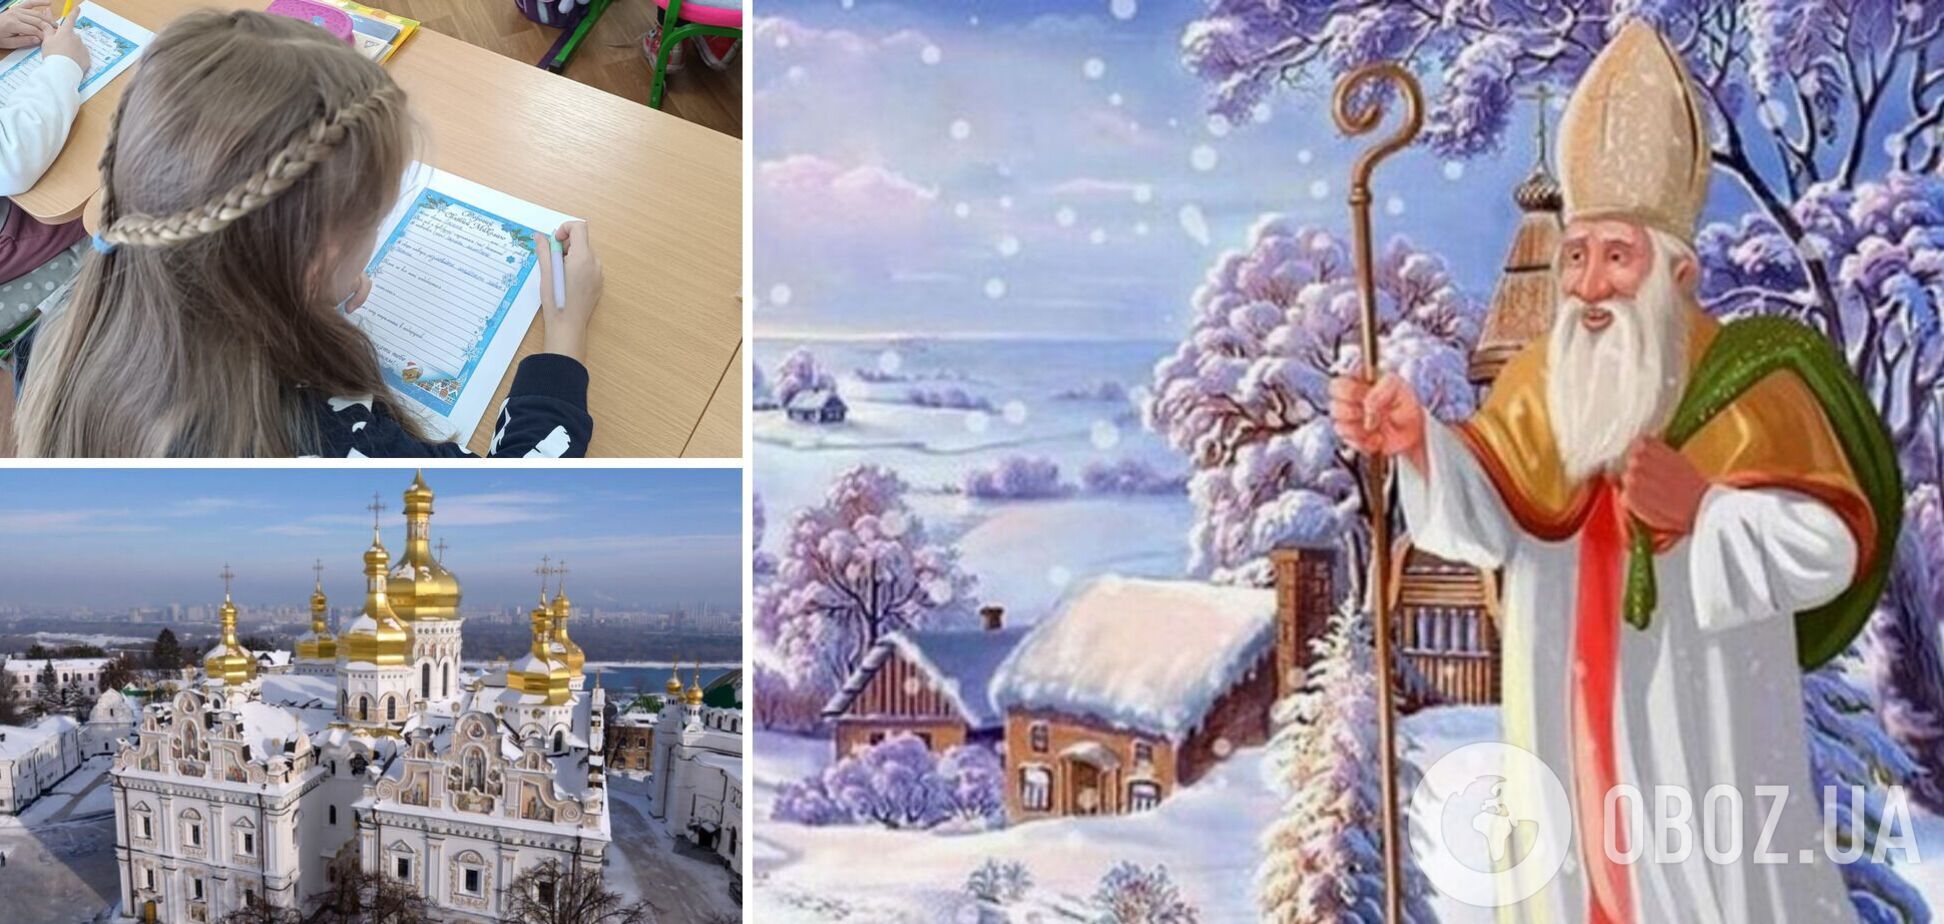 У містах відкривають ялинки, у садах та школах готують подарунки: як в Україні готуються святкувати Святого Миколая за новим стилем